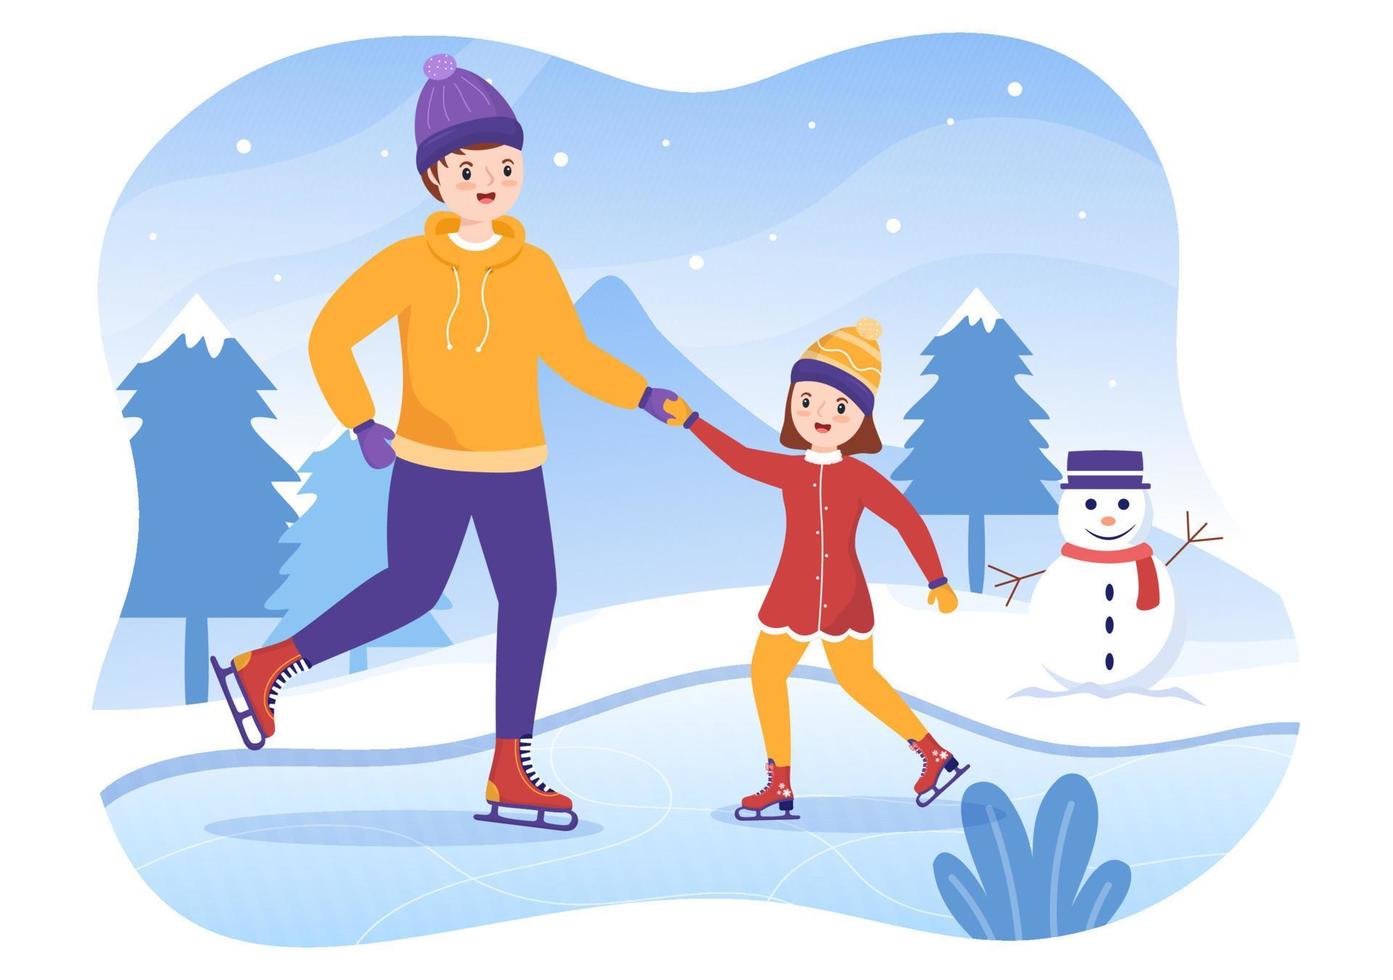 schaatsen met de hand getekende cartoon vlakke afbeelding van winterplezier buiten sportactiviteiten op ijsbaan met seizoensgebonden bovenkleding vector